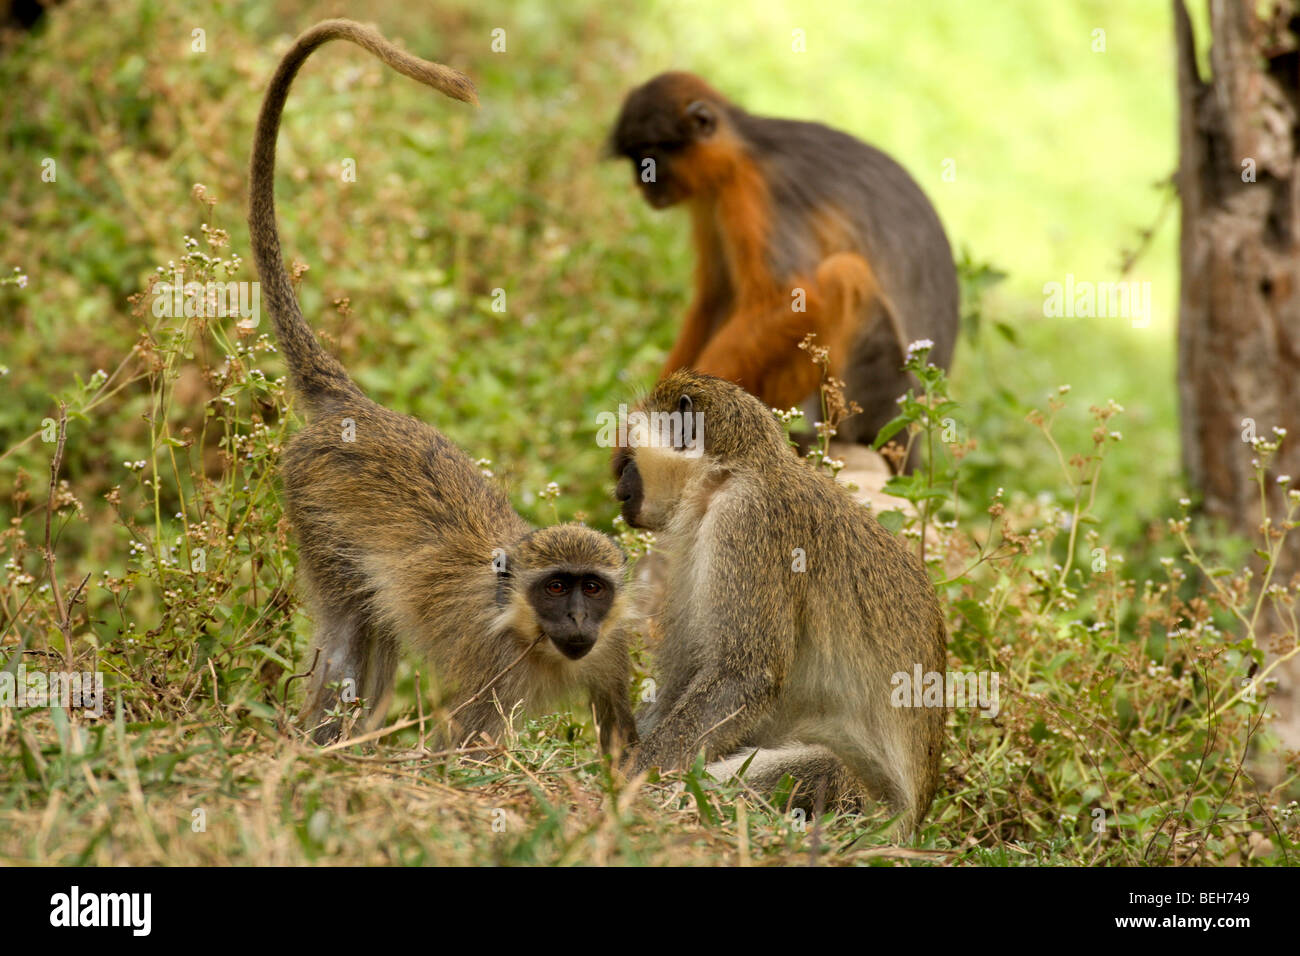 Singe vert & Red Colobus monkey, Réserve naturelle d'Abuko, Lamin,Gambie Banque D'Images